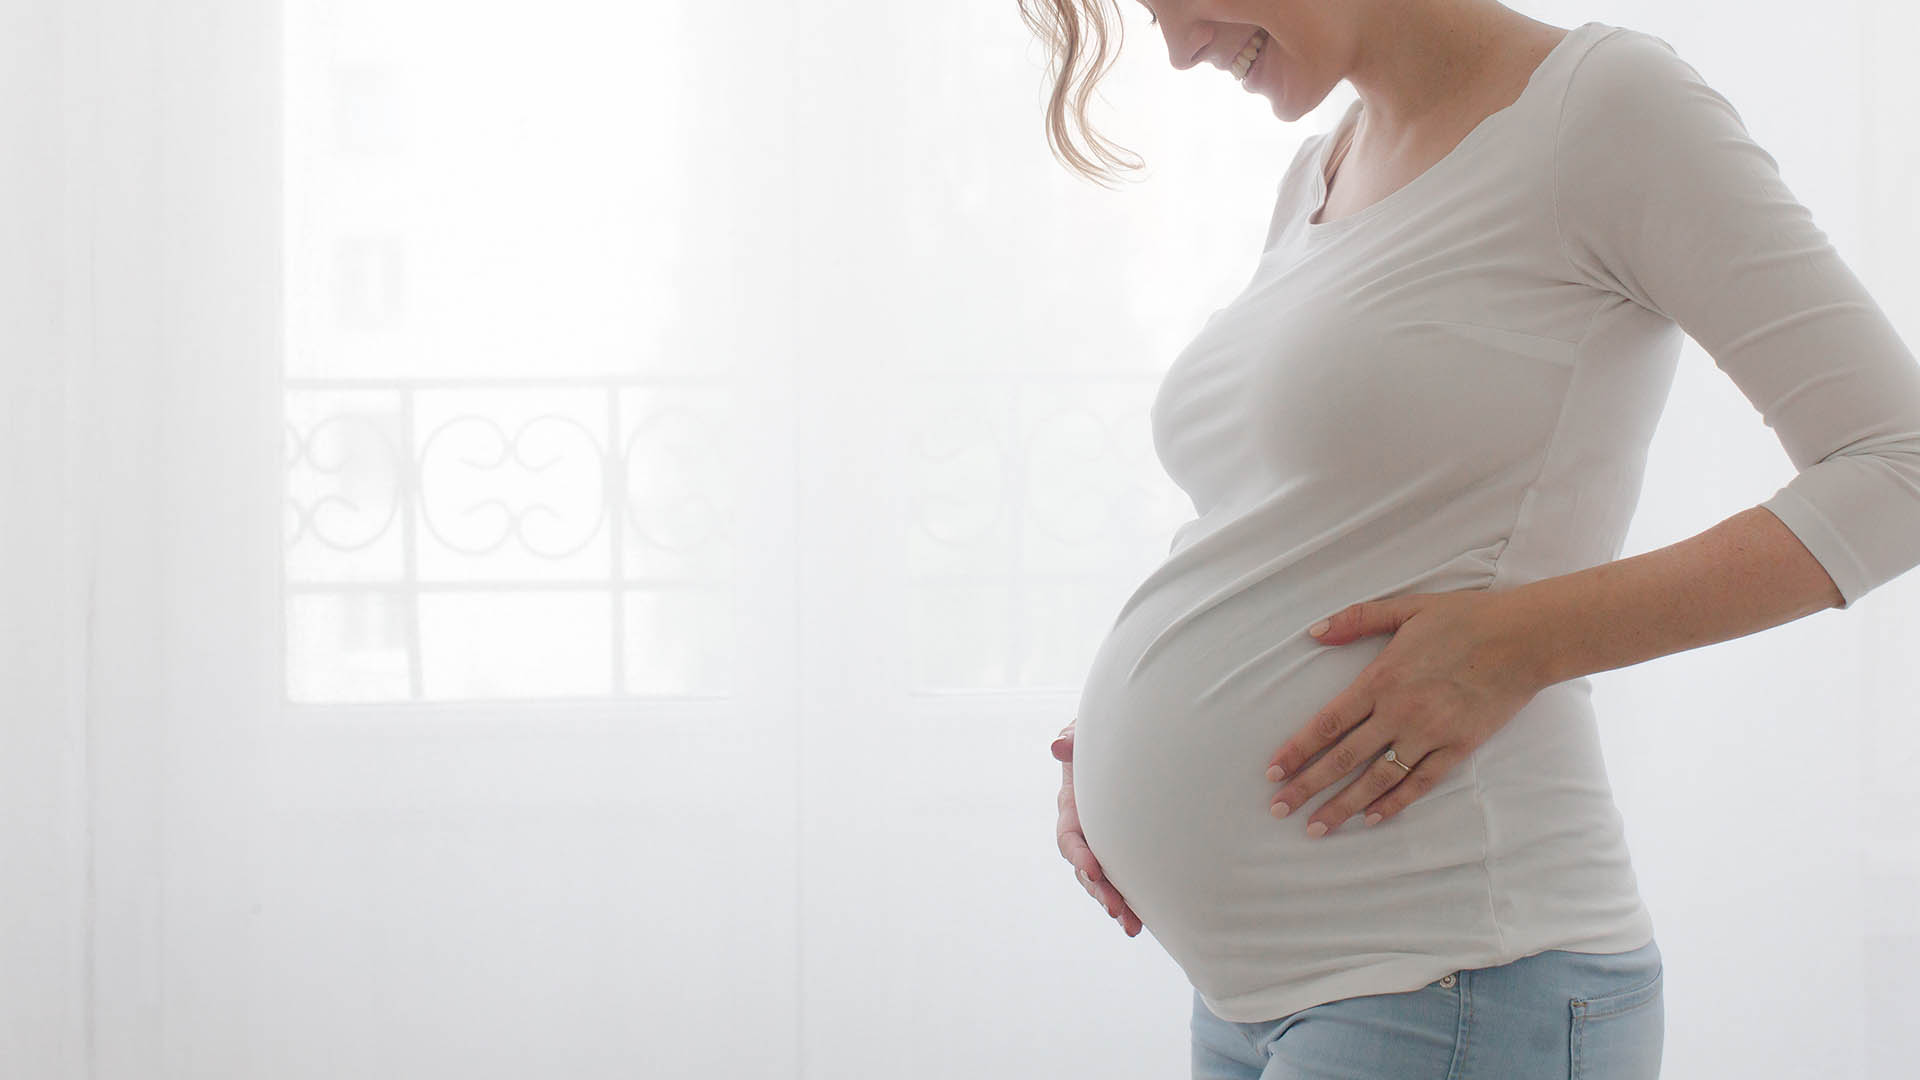 Il DHA ha un ruolo protettivo molto importante in gravidanza e in allattamento. previene la cos detta depressione post-partum